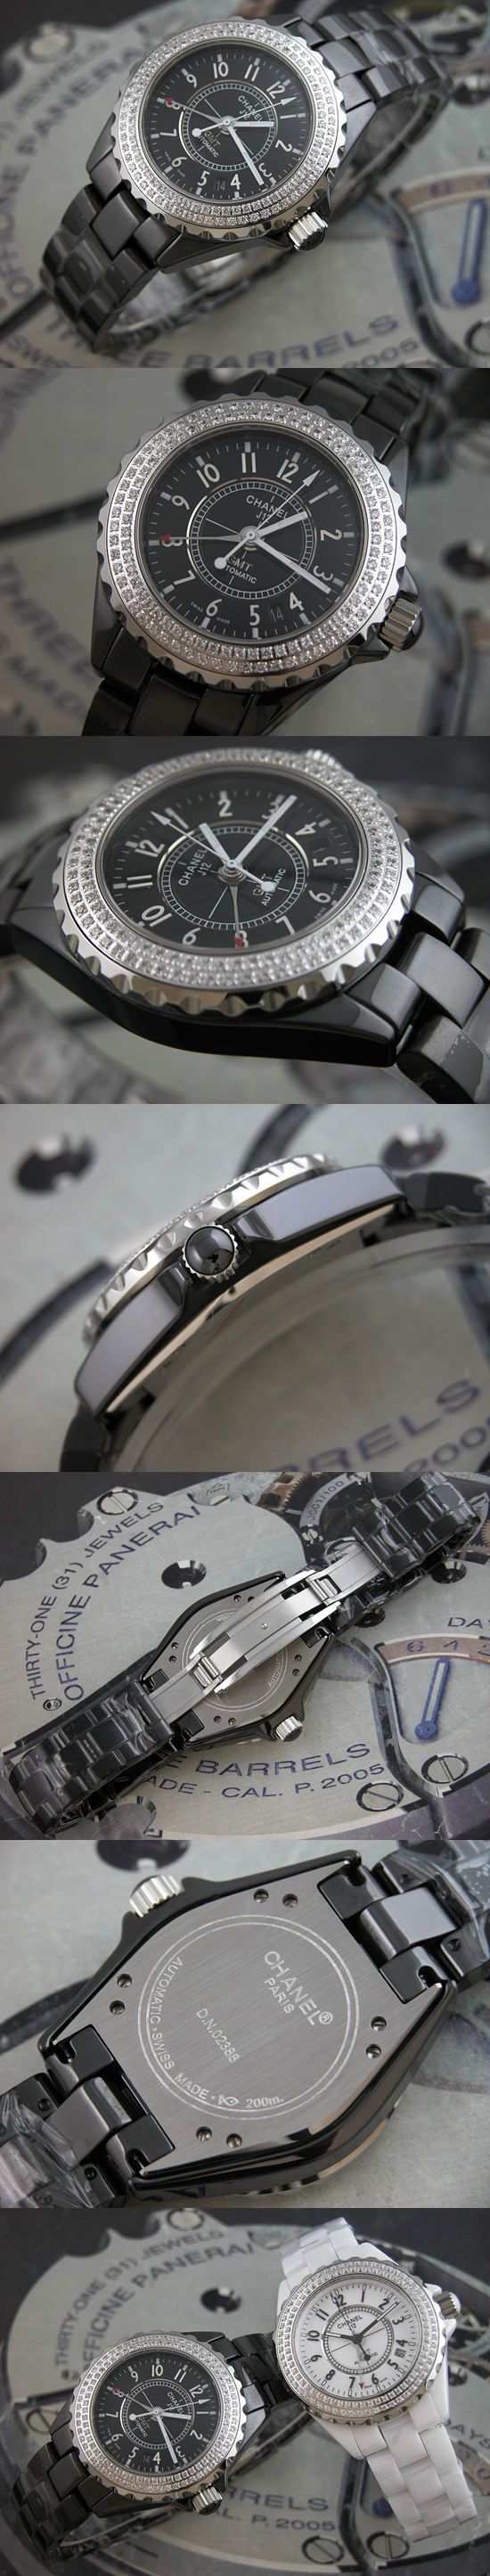 おしゃれなブランド時計がシャネル-CHANEL-H0950-ba-J12-男性用を提供します.